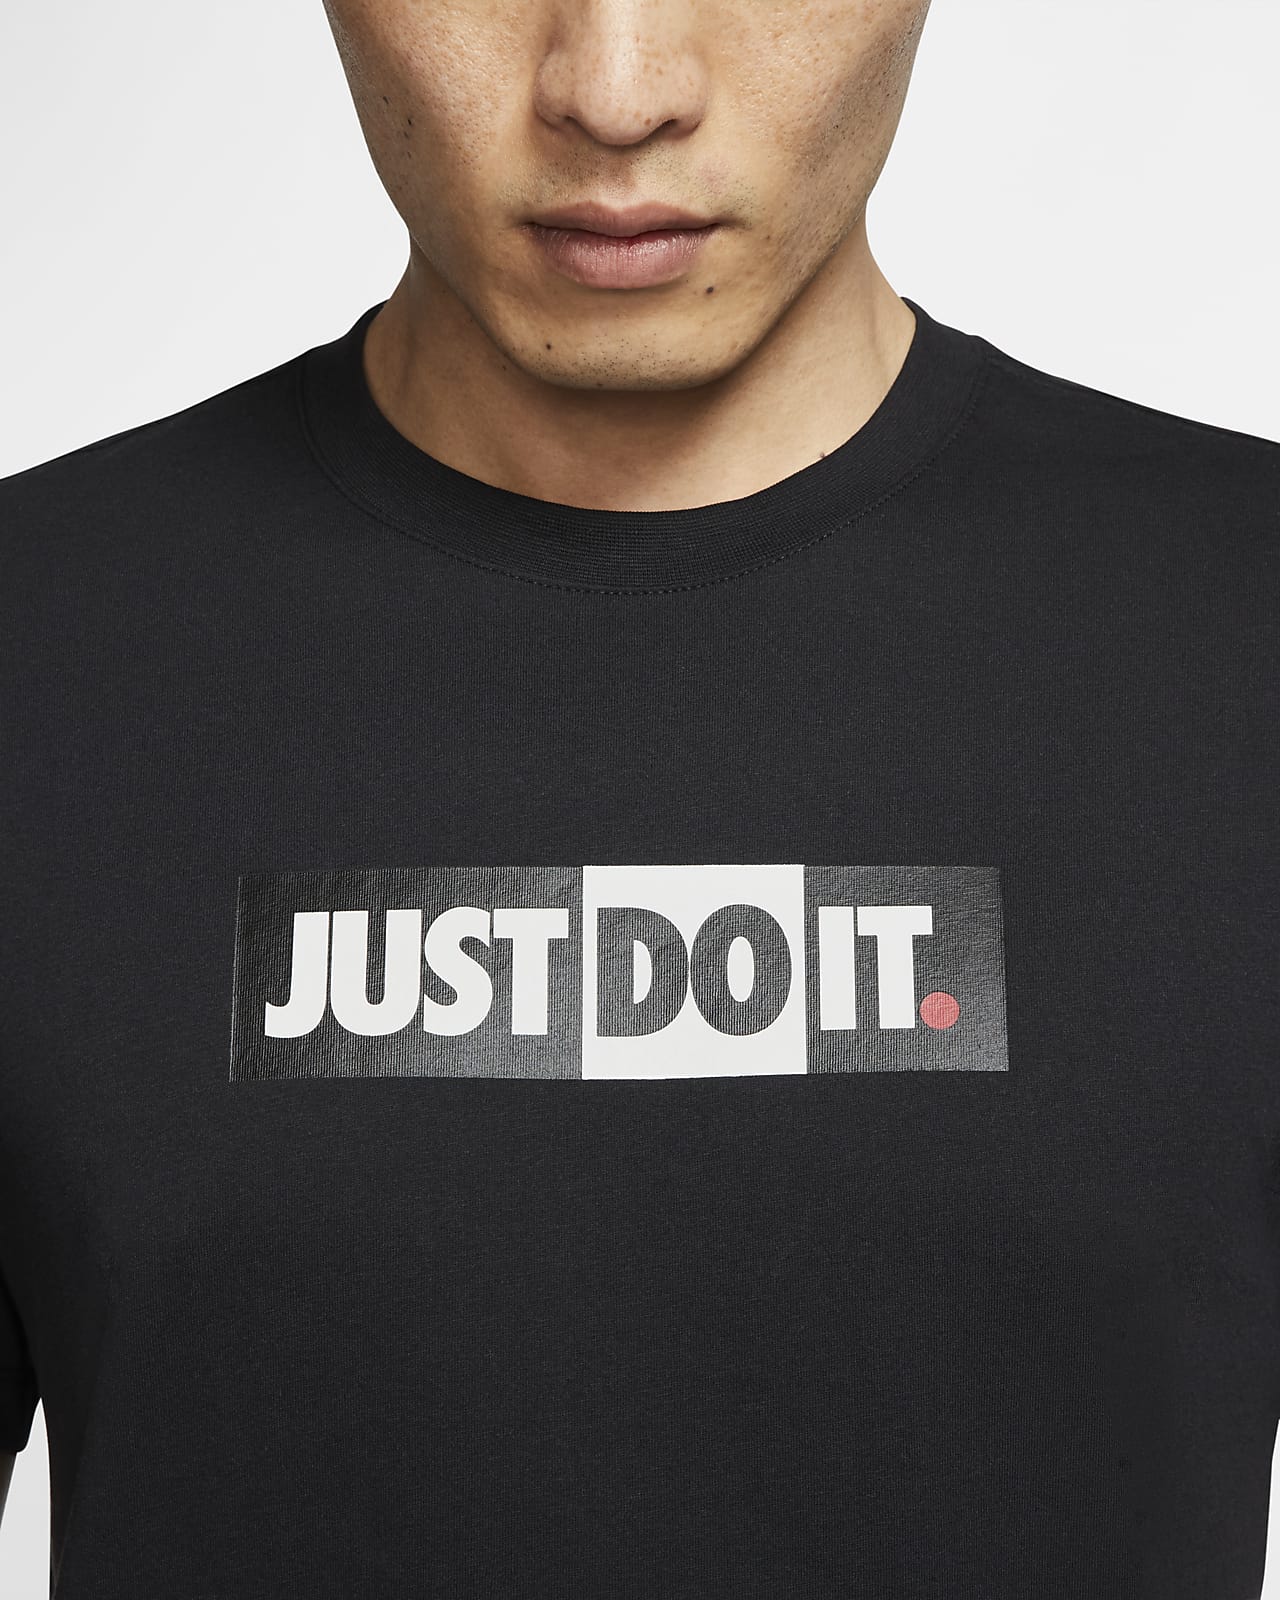 Nike公式 ナイキ スポーツウェア Jdi メンズ Tシャツ オンラインストア 通販サイト